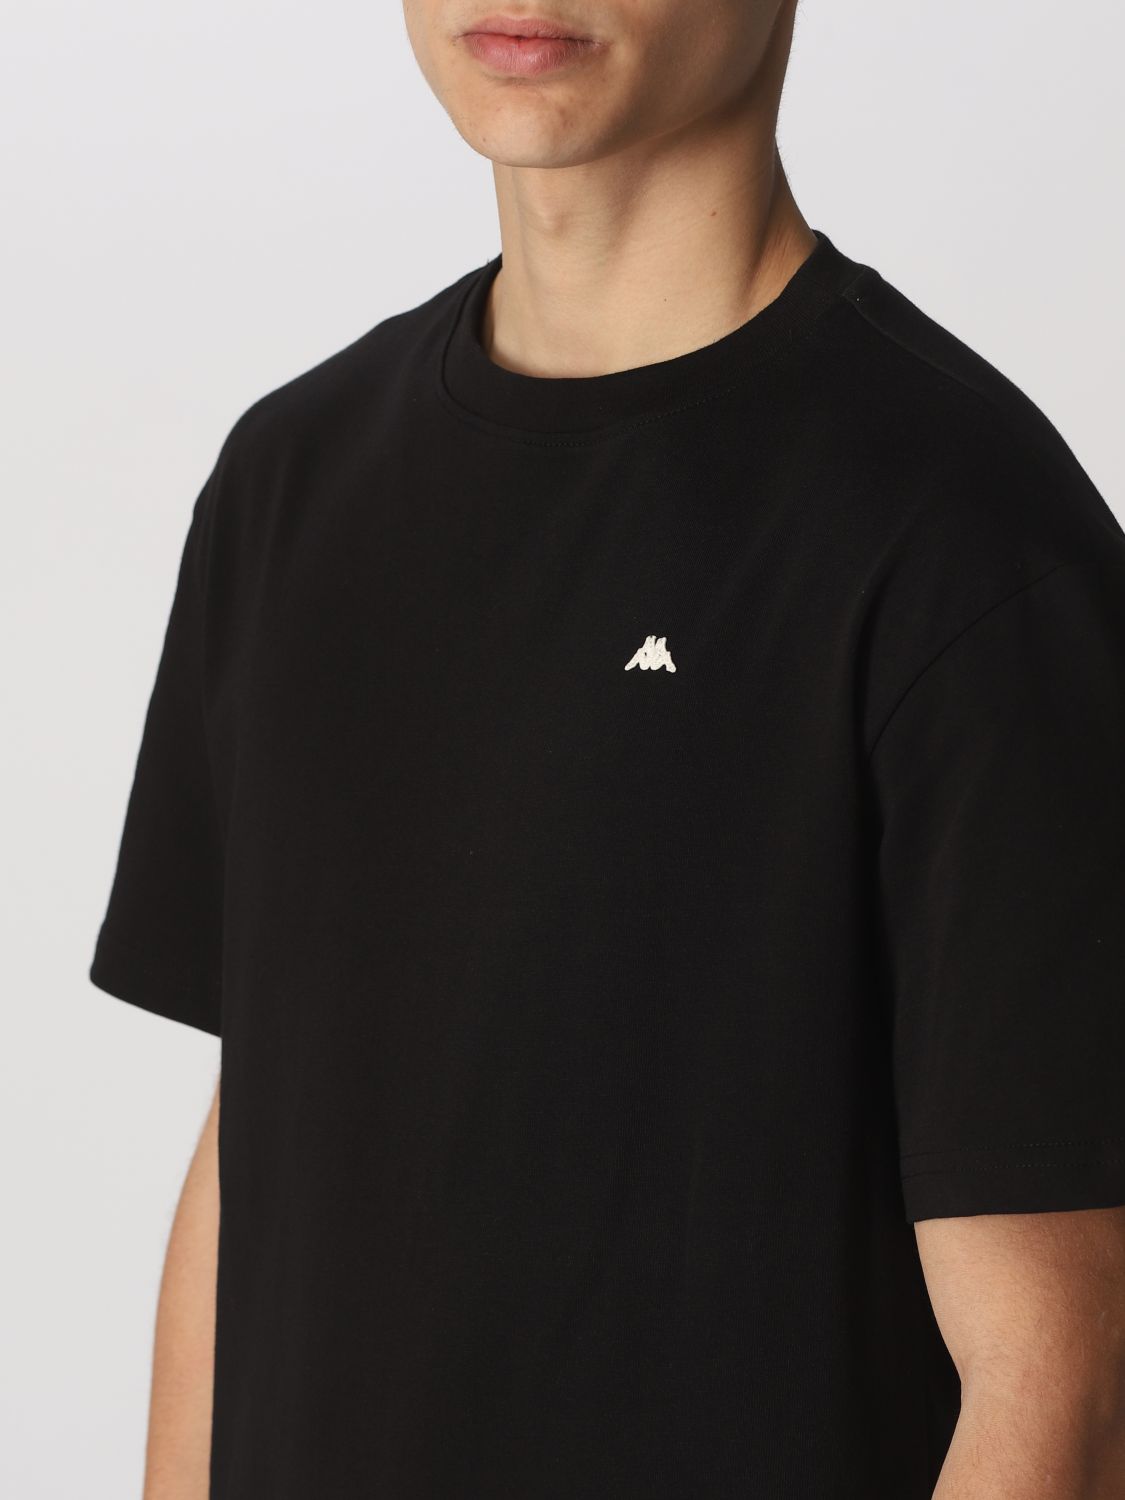 paso Agradecido Ahora ROBE DI KAPPA: Camiseta para hombre, Negro | Camiseta Robe Di Kappa 65111LW  en línea en GIGLIO.COM